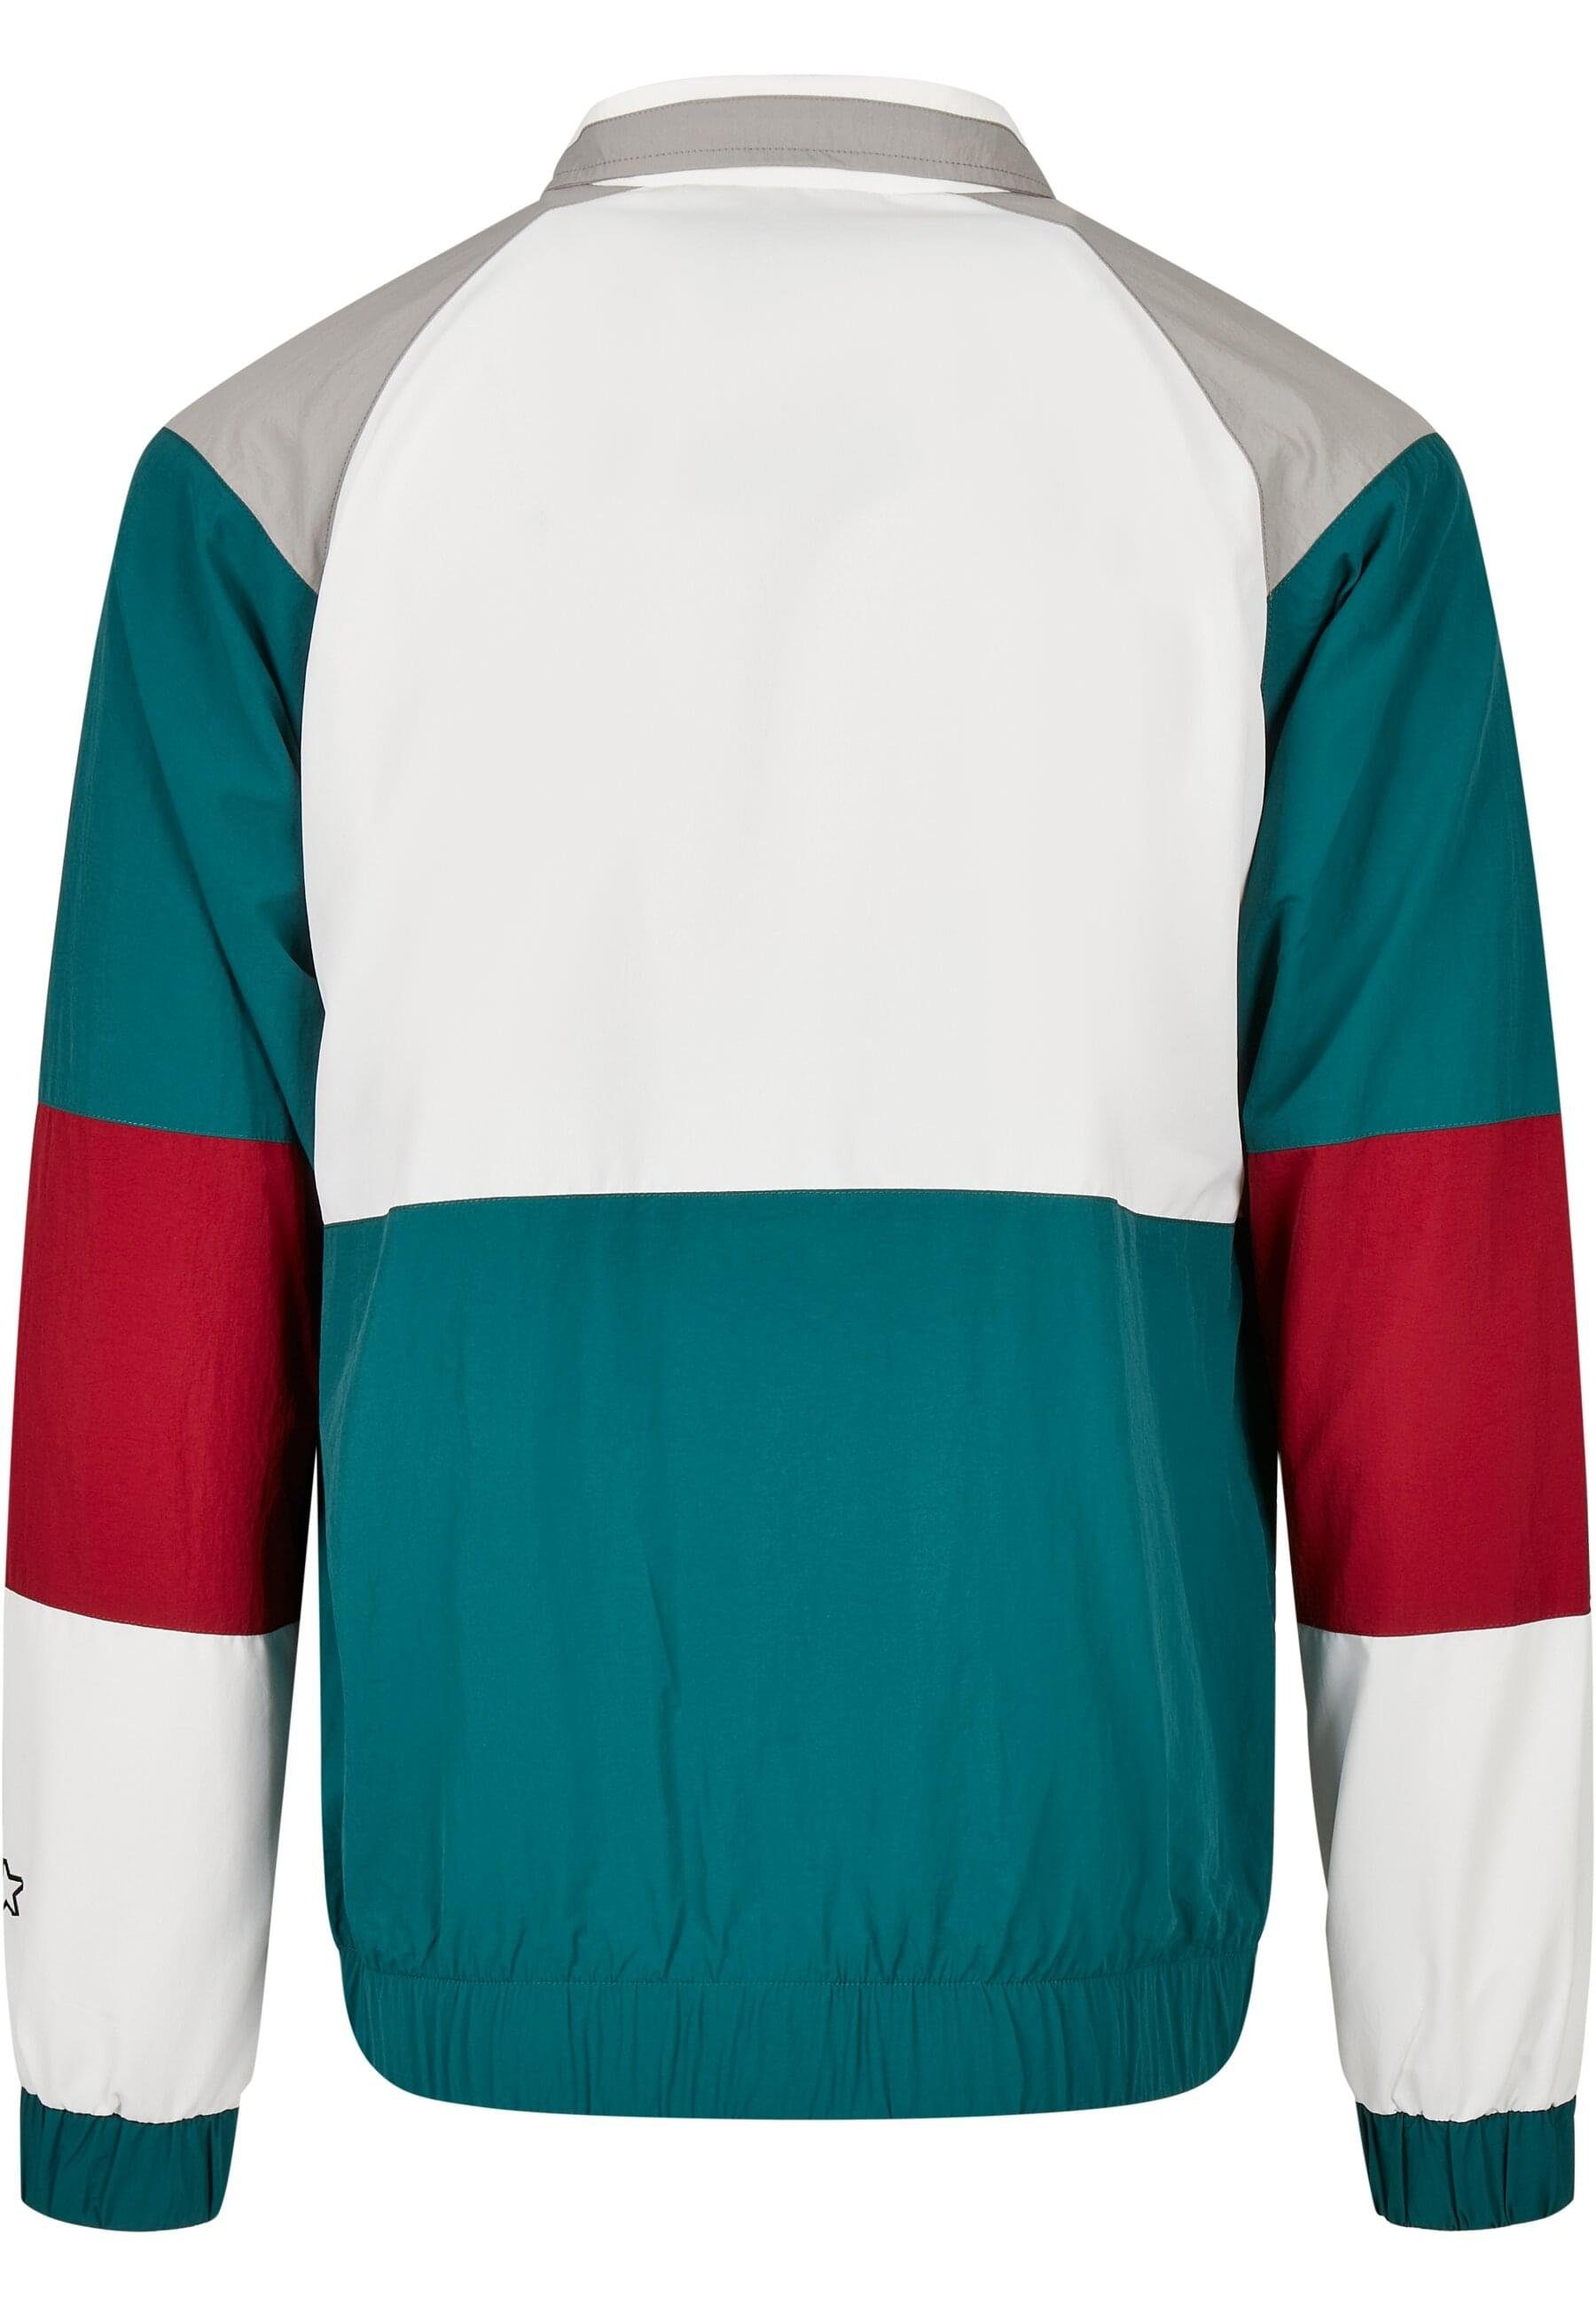 retrogreen/white/green Starter Blouson Color (1-St) Block Herren Starter Retro Jacket